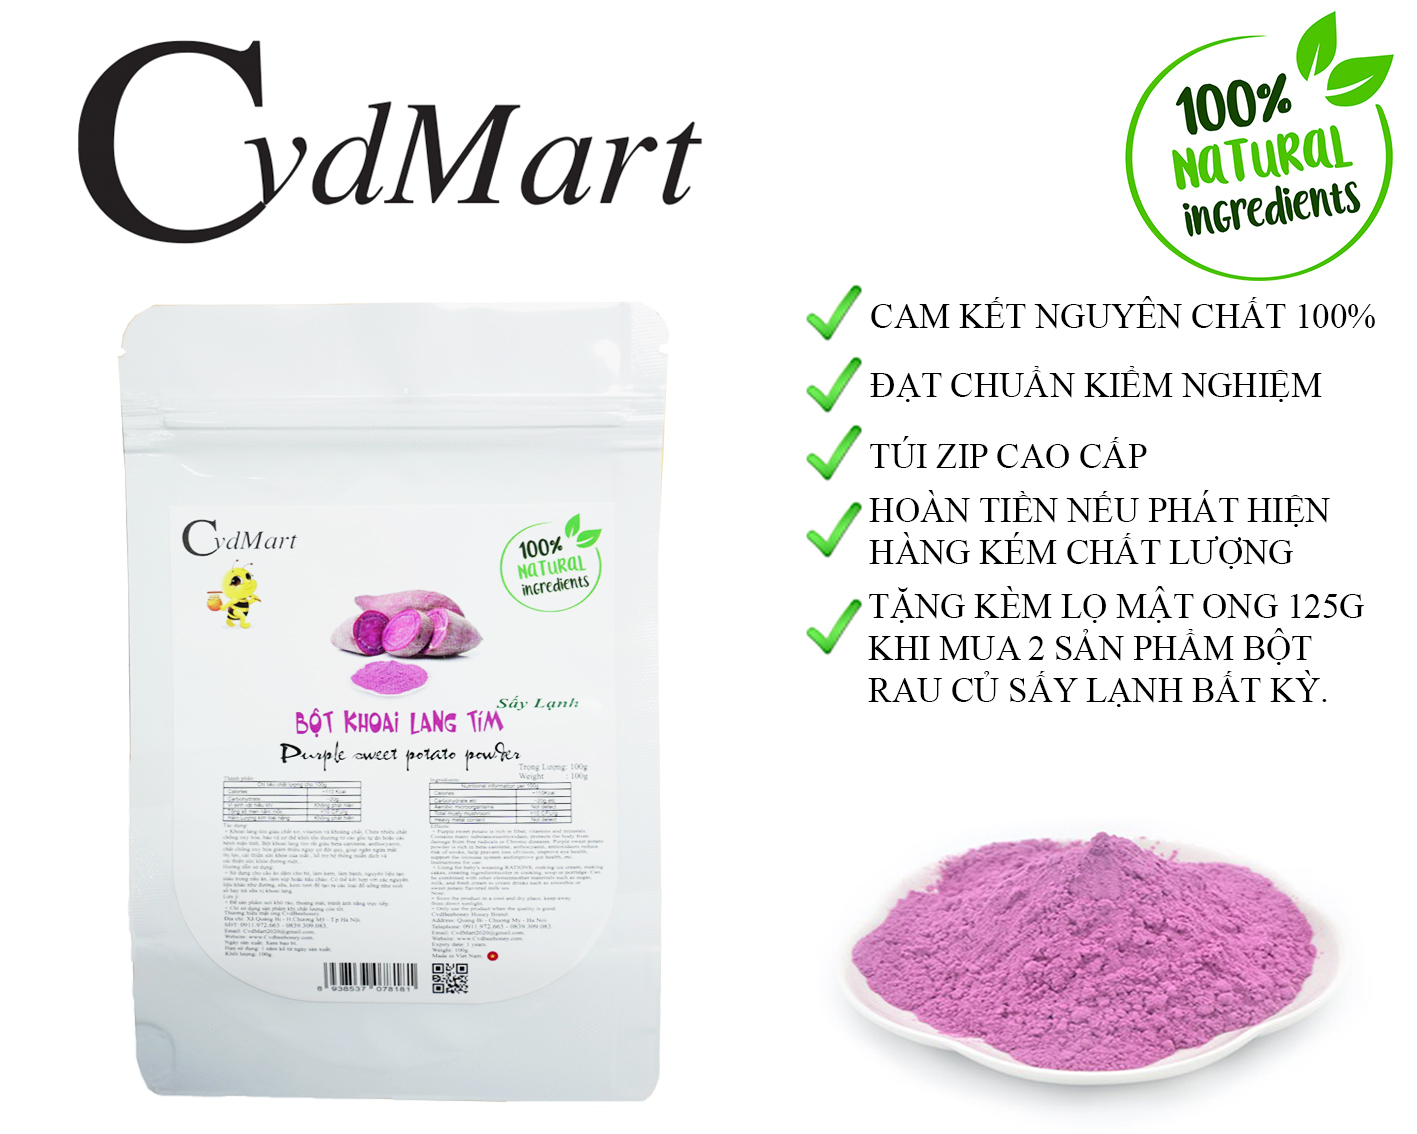 Bột Khoai Lang Tím Sấy Lạnh CvdMart 100g - Purple sweet potato powder CvdMart